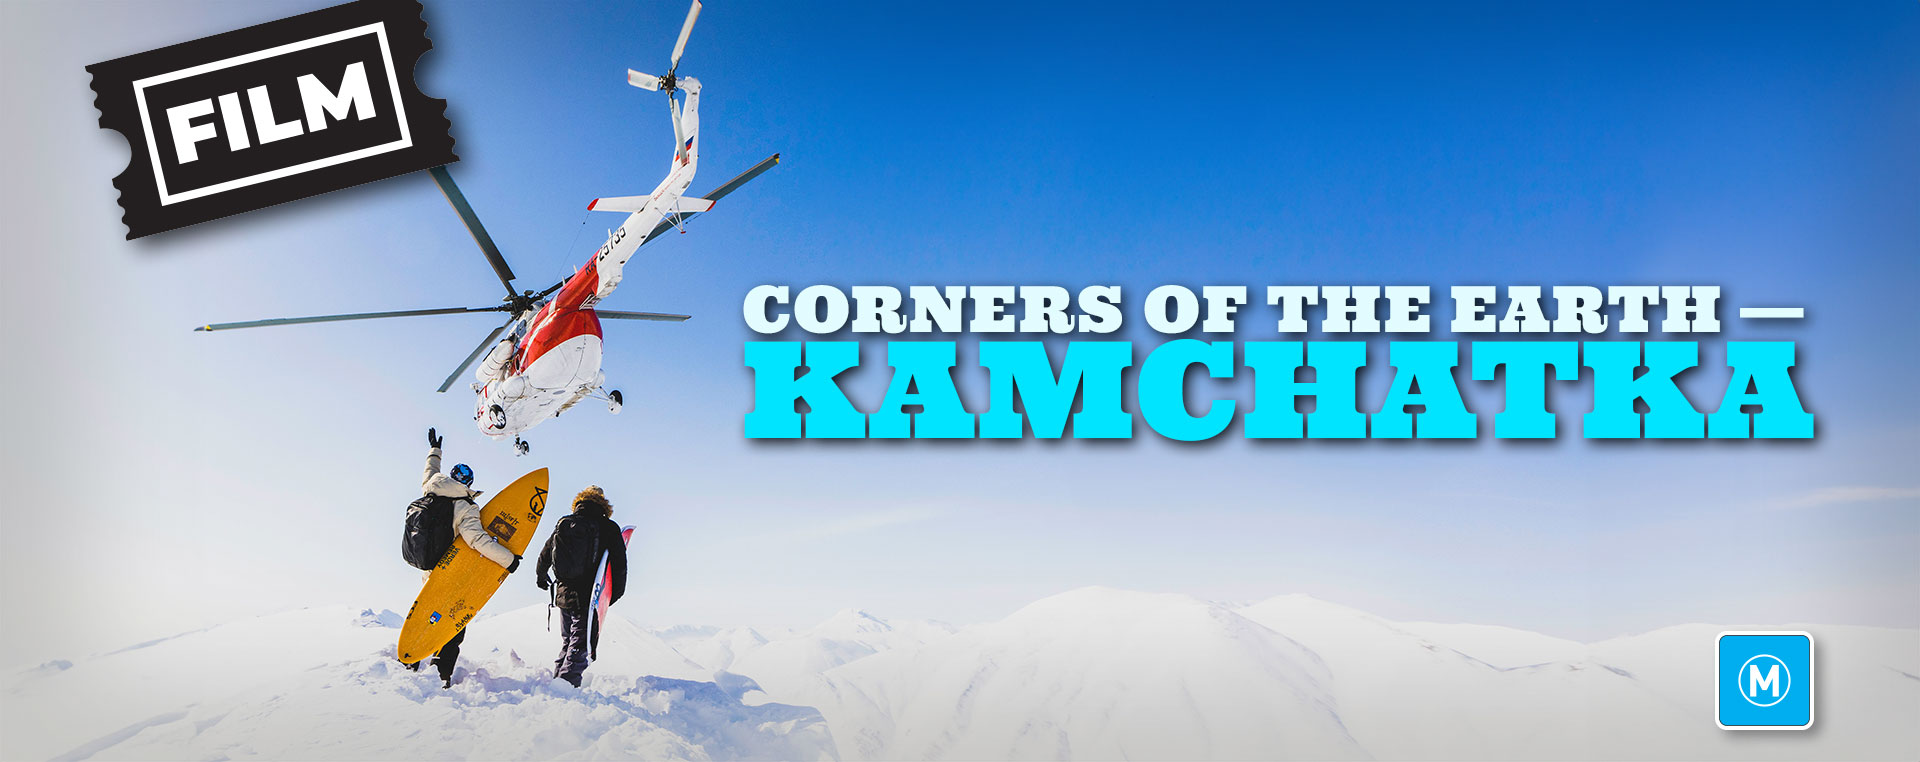 Corners of the Earth — Kamchatka 18 Oct